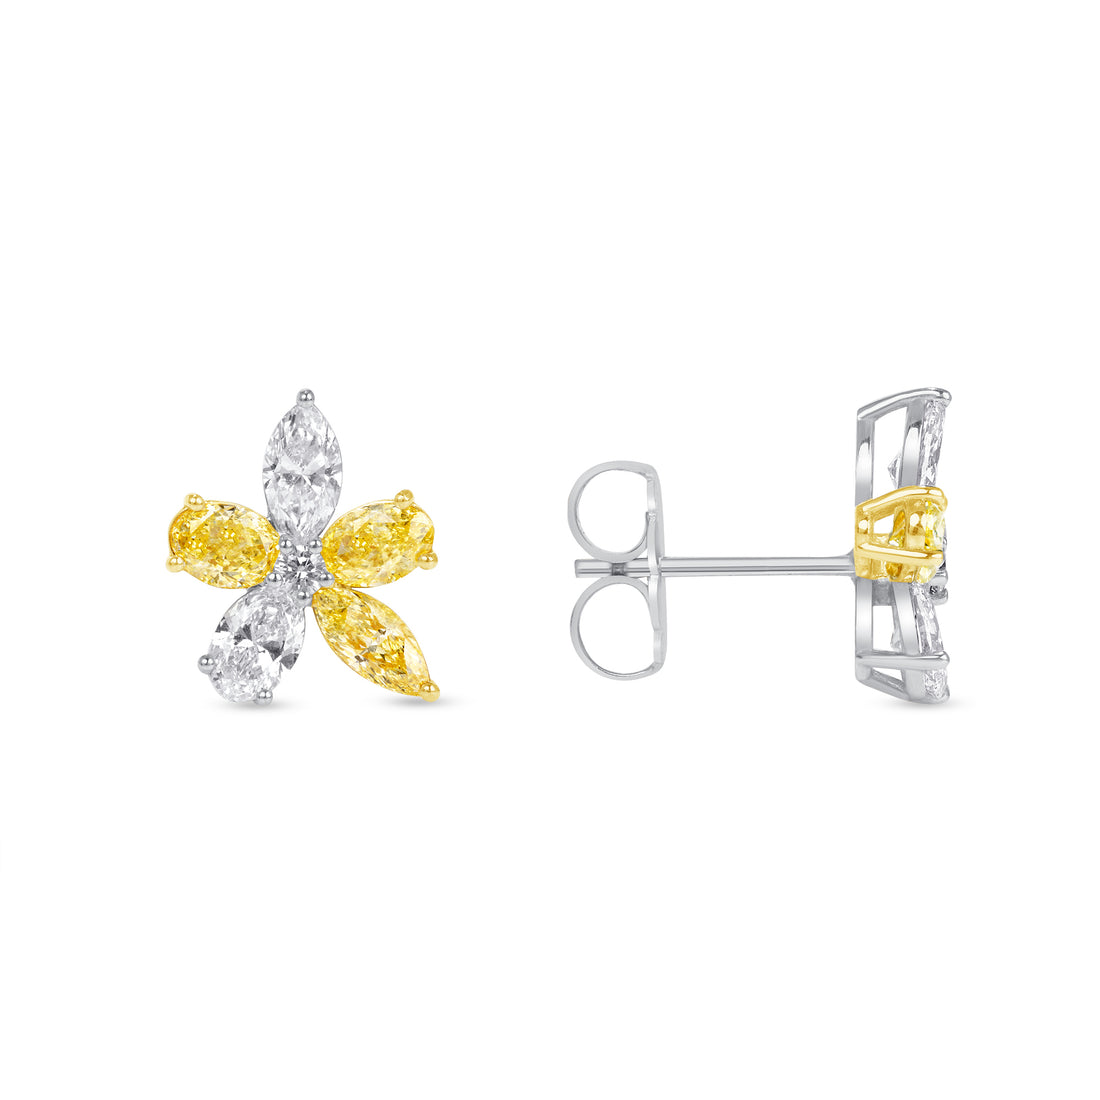 3.14 CT. Fancy Shape Fancy Yellow Diamond Flower Stud Earrings in 14K White Gold